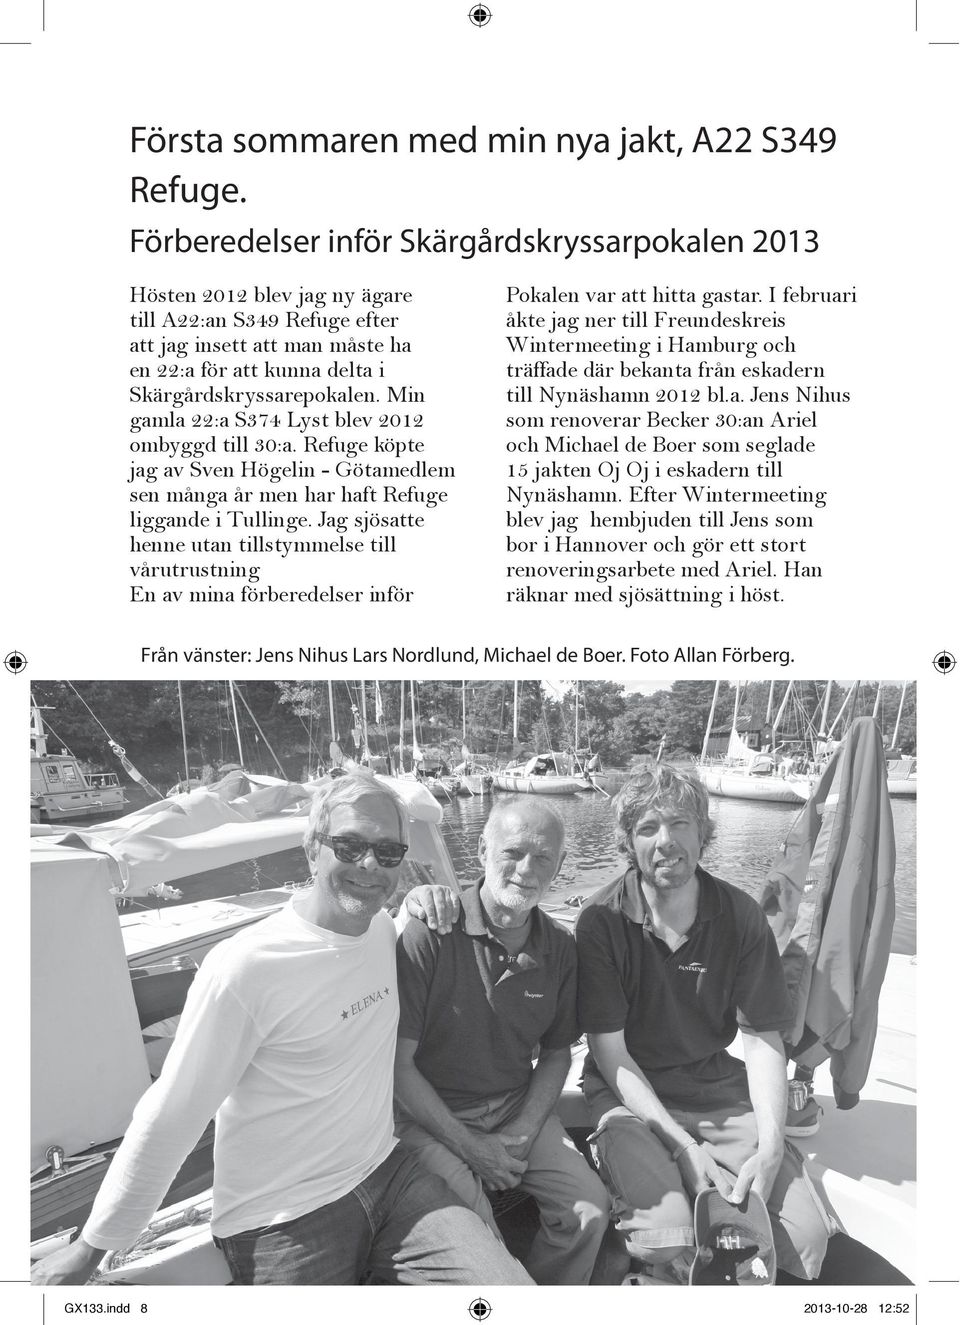 Min gamla 22:a S374 Lyst blev 2012 ombyggd till 30:a. Refuge köpte jag av Sven Högelin - Götamedlem sen många år men har haft Refuge liggande i Tullinge.